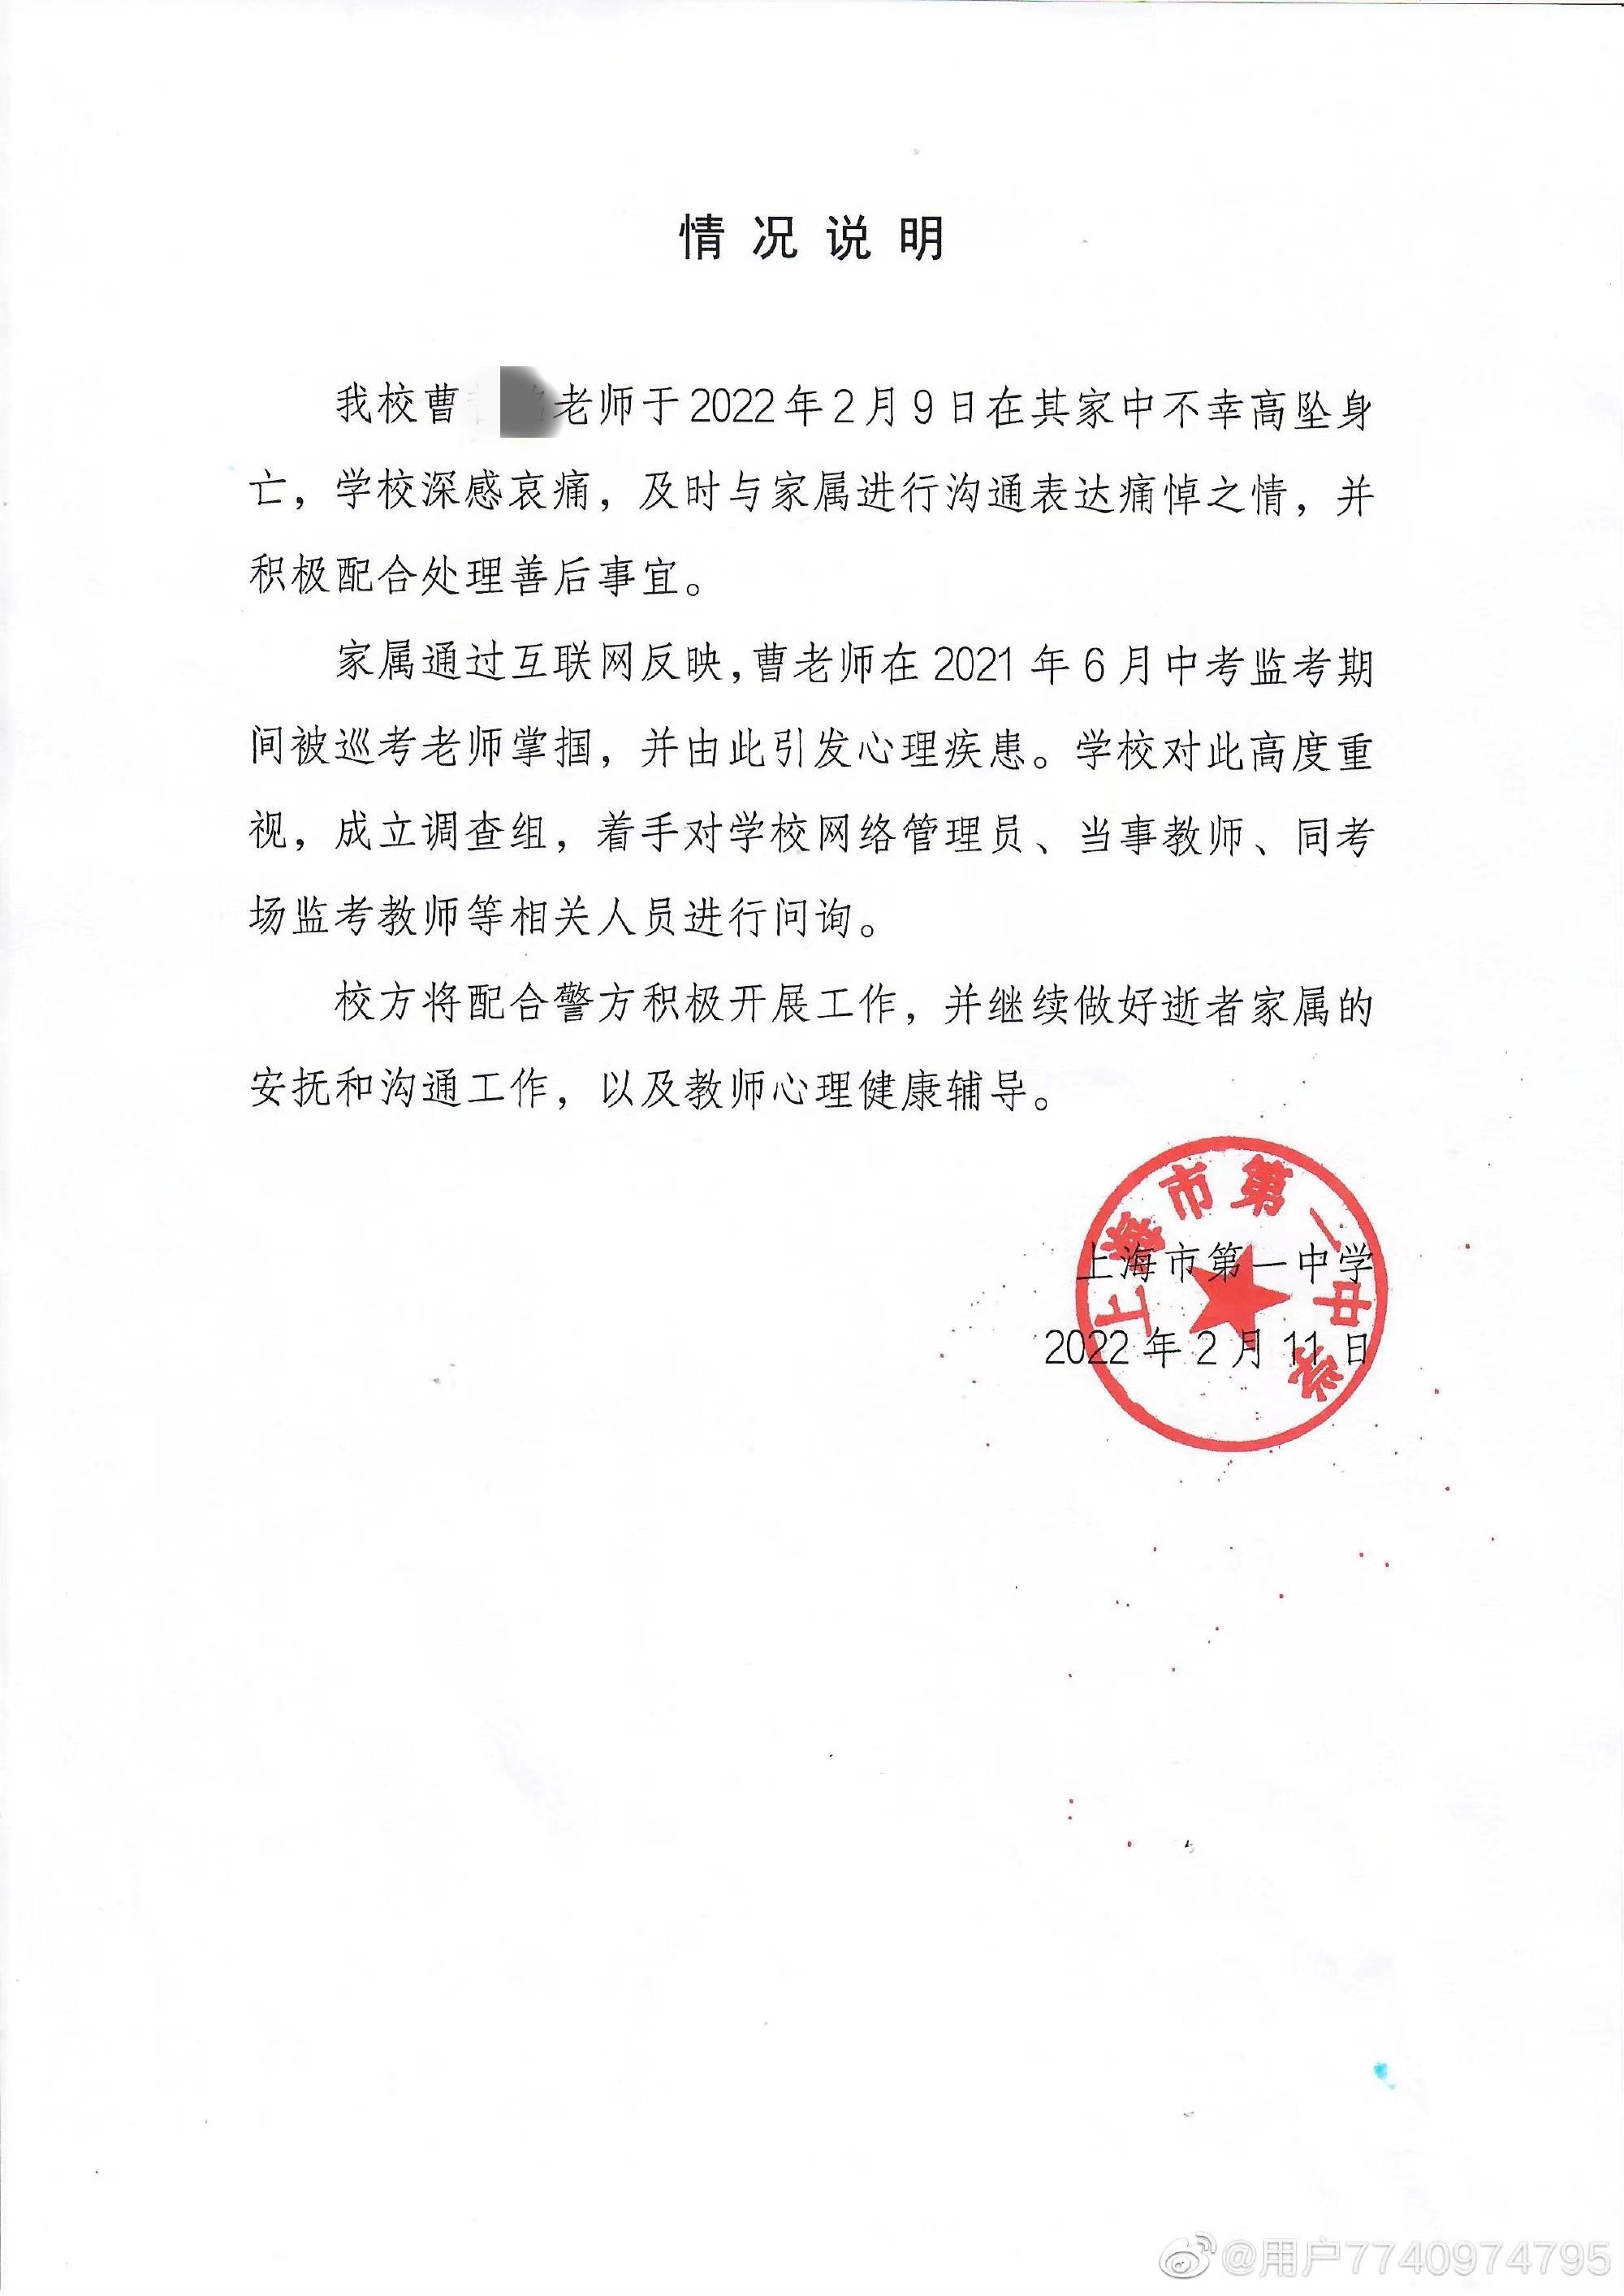 上海一教师坠亡，家属称其生前遭领导掌掴；学校成立调查组，友人发声